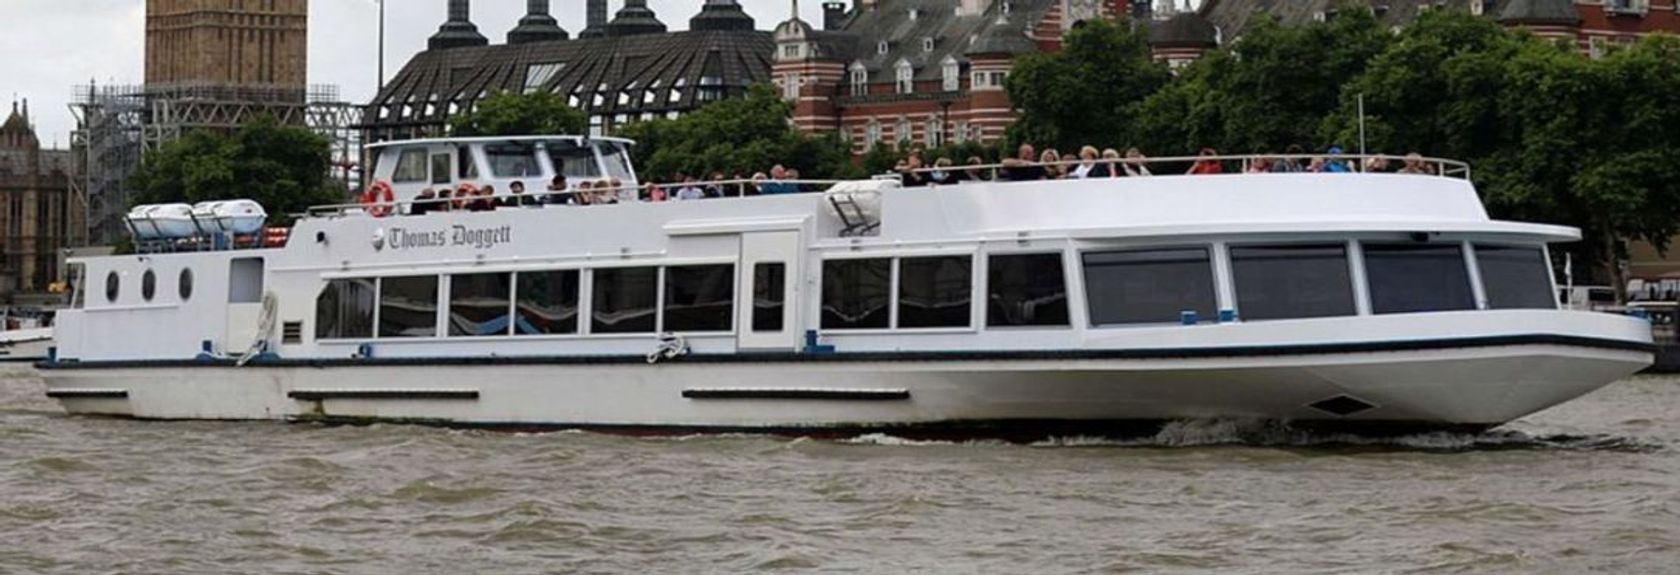 Descubra Londres da água durante esta viagem de duas horas de barco no Tamisa, navegando de Westminster, no centro de Londres, até Greenwich e de volta.